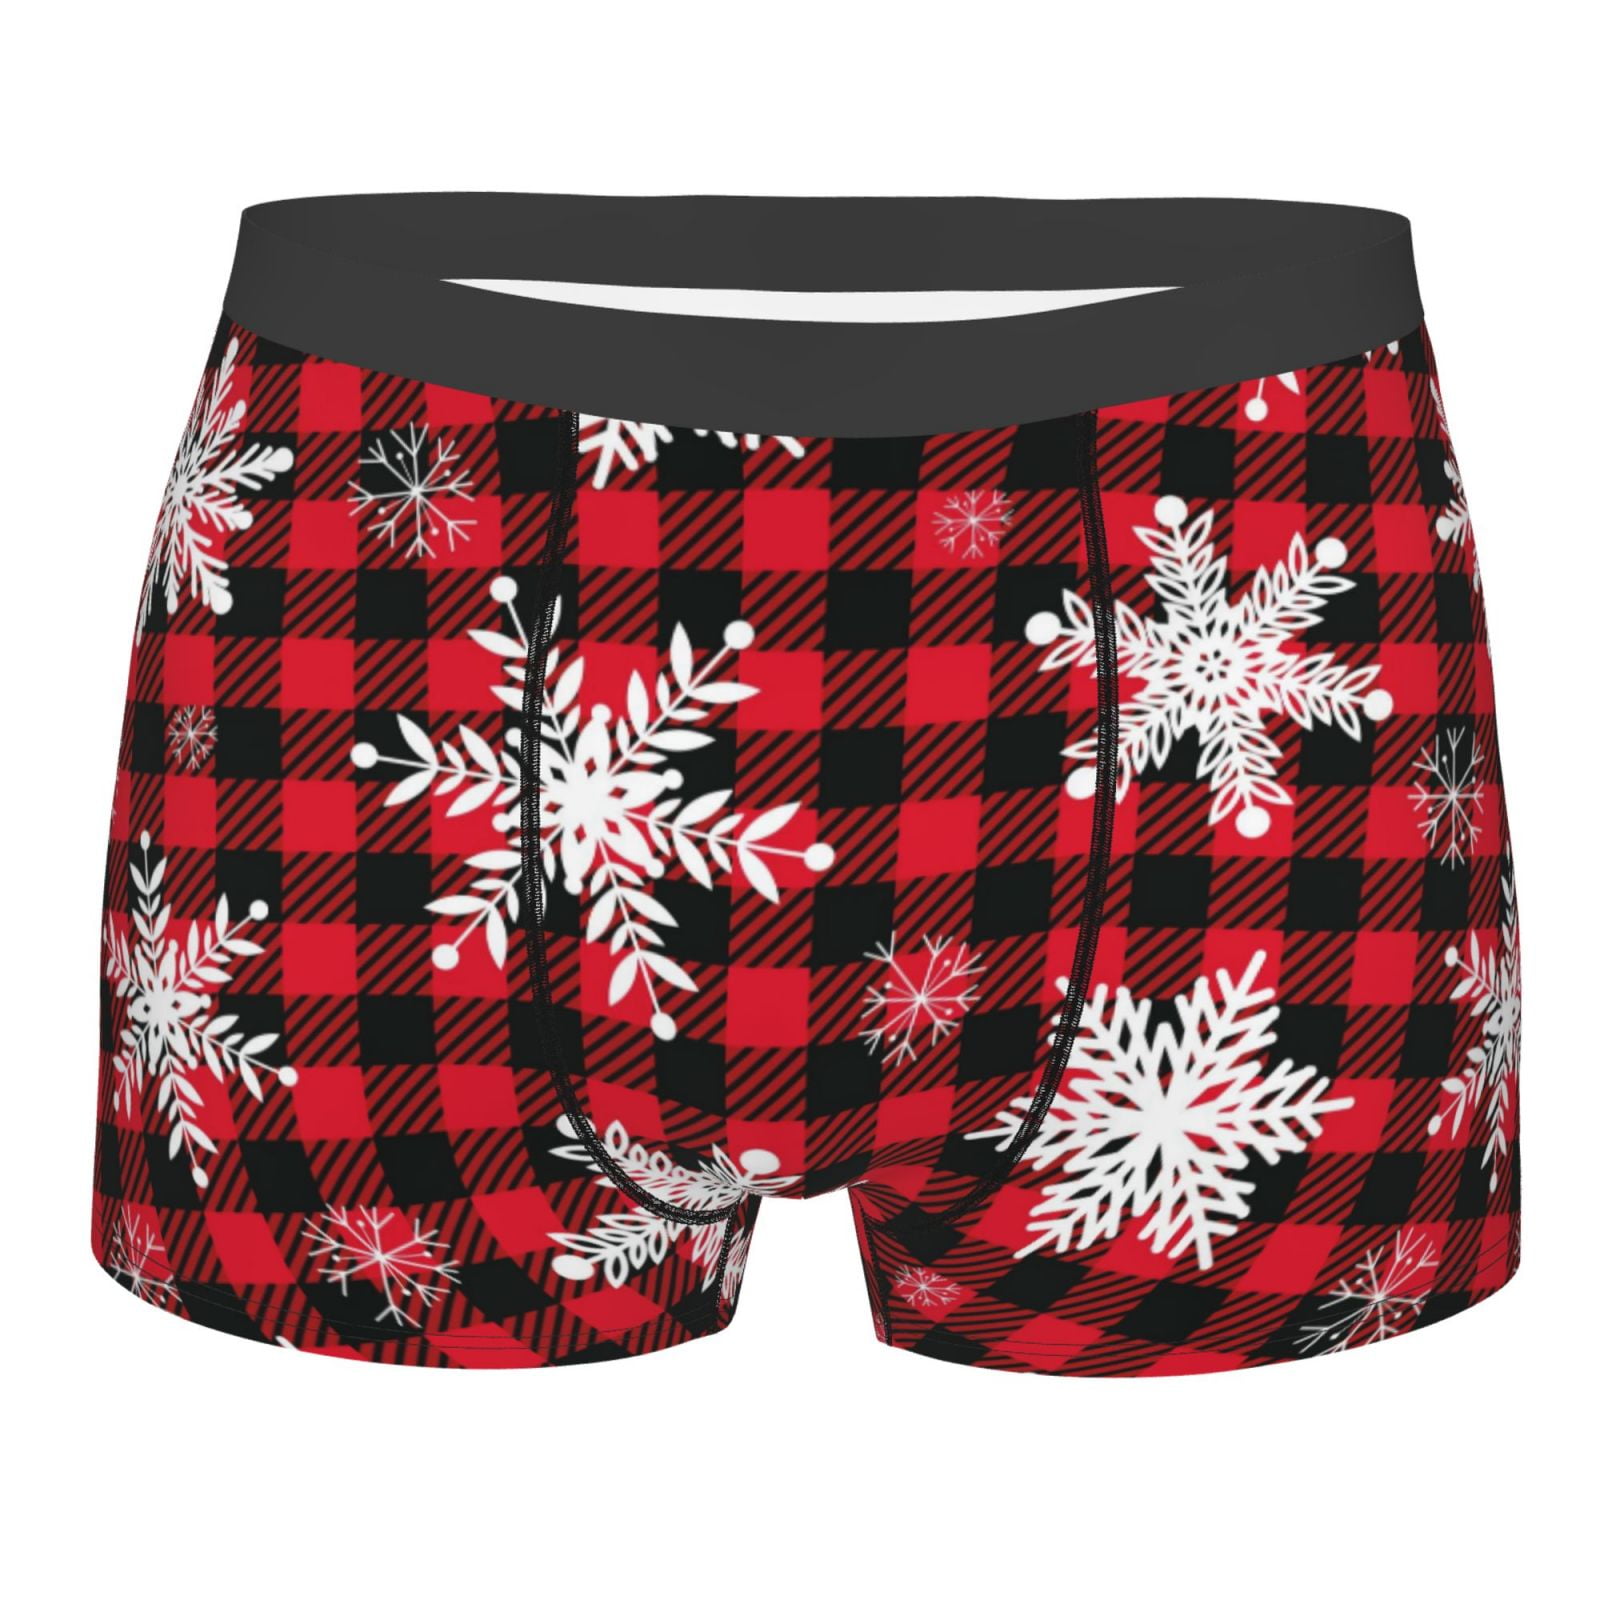 Kll Snowflakes On A Buffalo Plaid Christmas Men'S Cotton Boxer